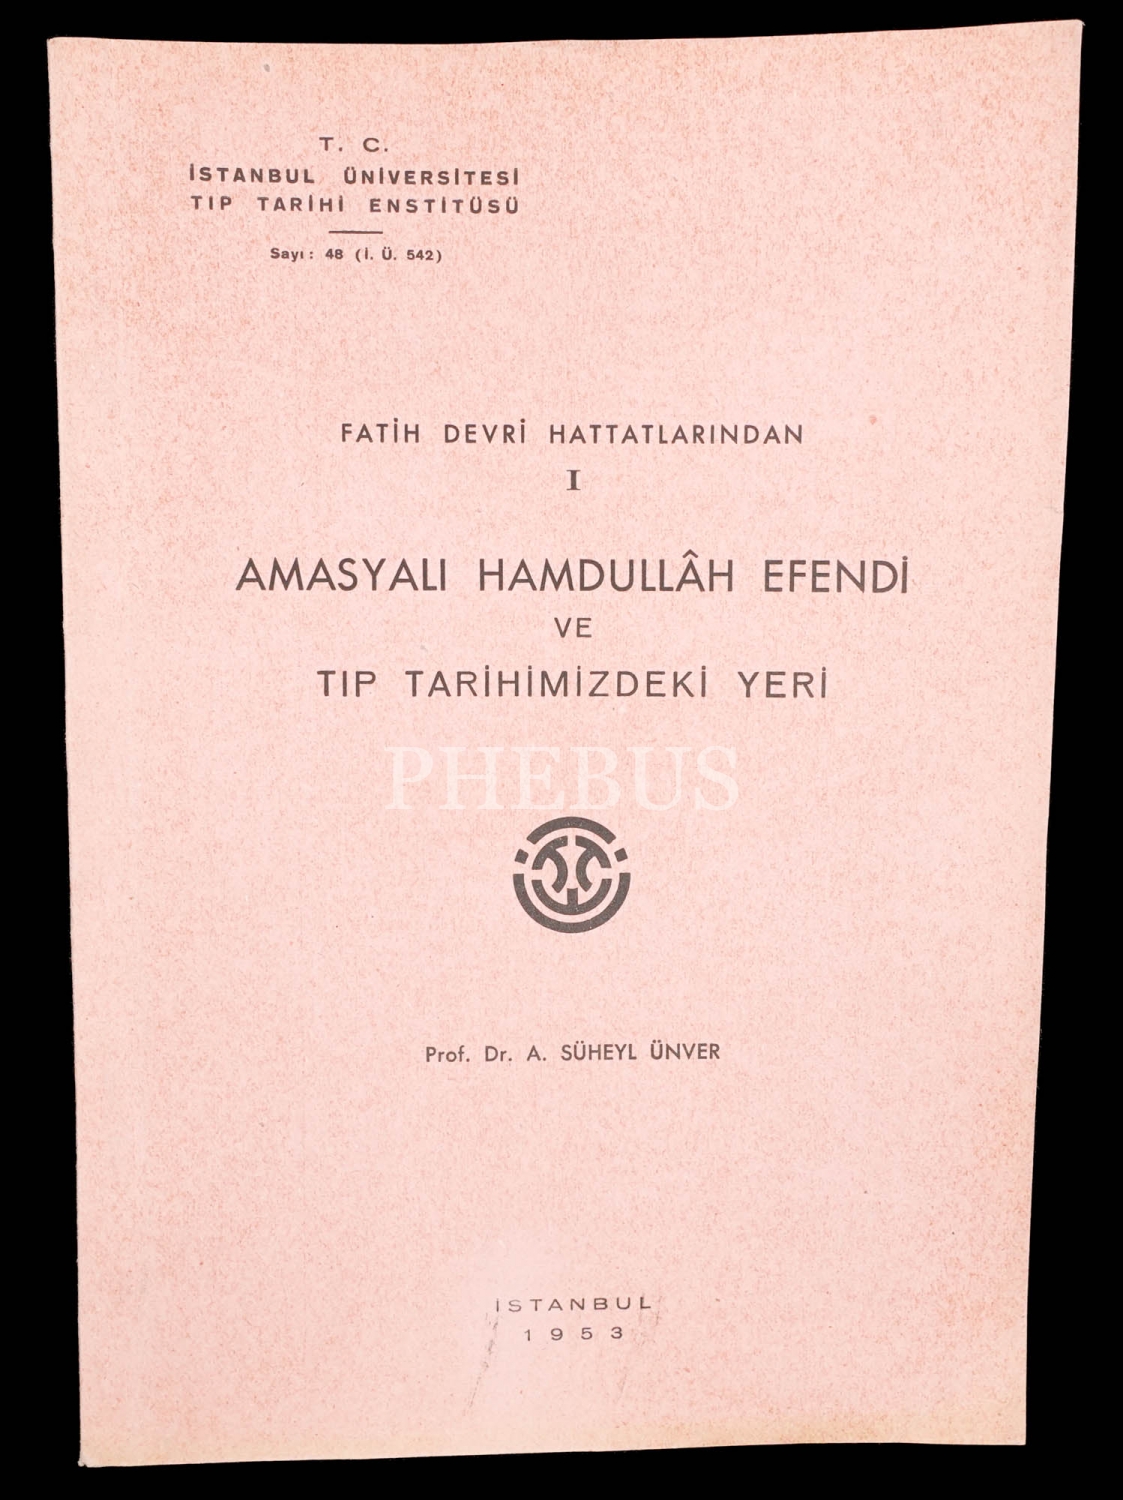 FATİH DEVRİ HATTATLARINDAN AMASYALI HAMDULLAH EFENDİ VE TIP TARİHİMİZDEKİ YERİ, Süheyl Ünver, 1953, T. C. İstanbul Üniversitesi Tıp Tarihi Enstitüsü, 27 sayfa, 17x24 cm...